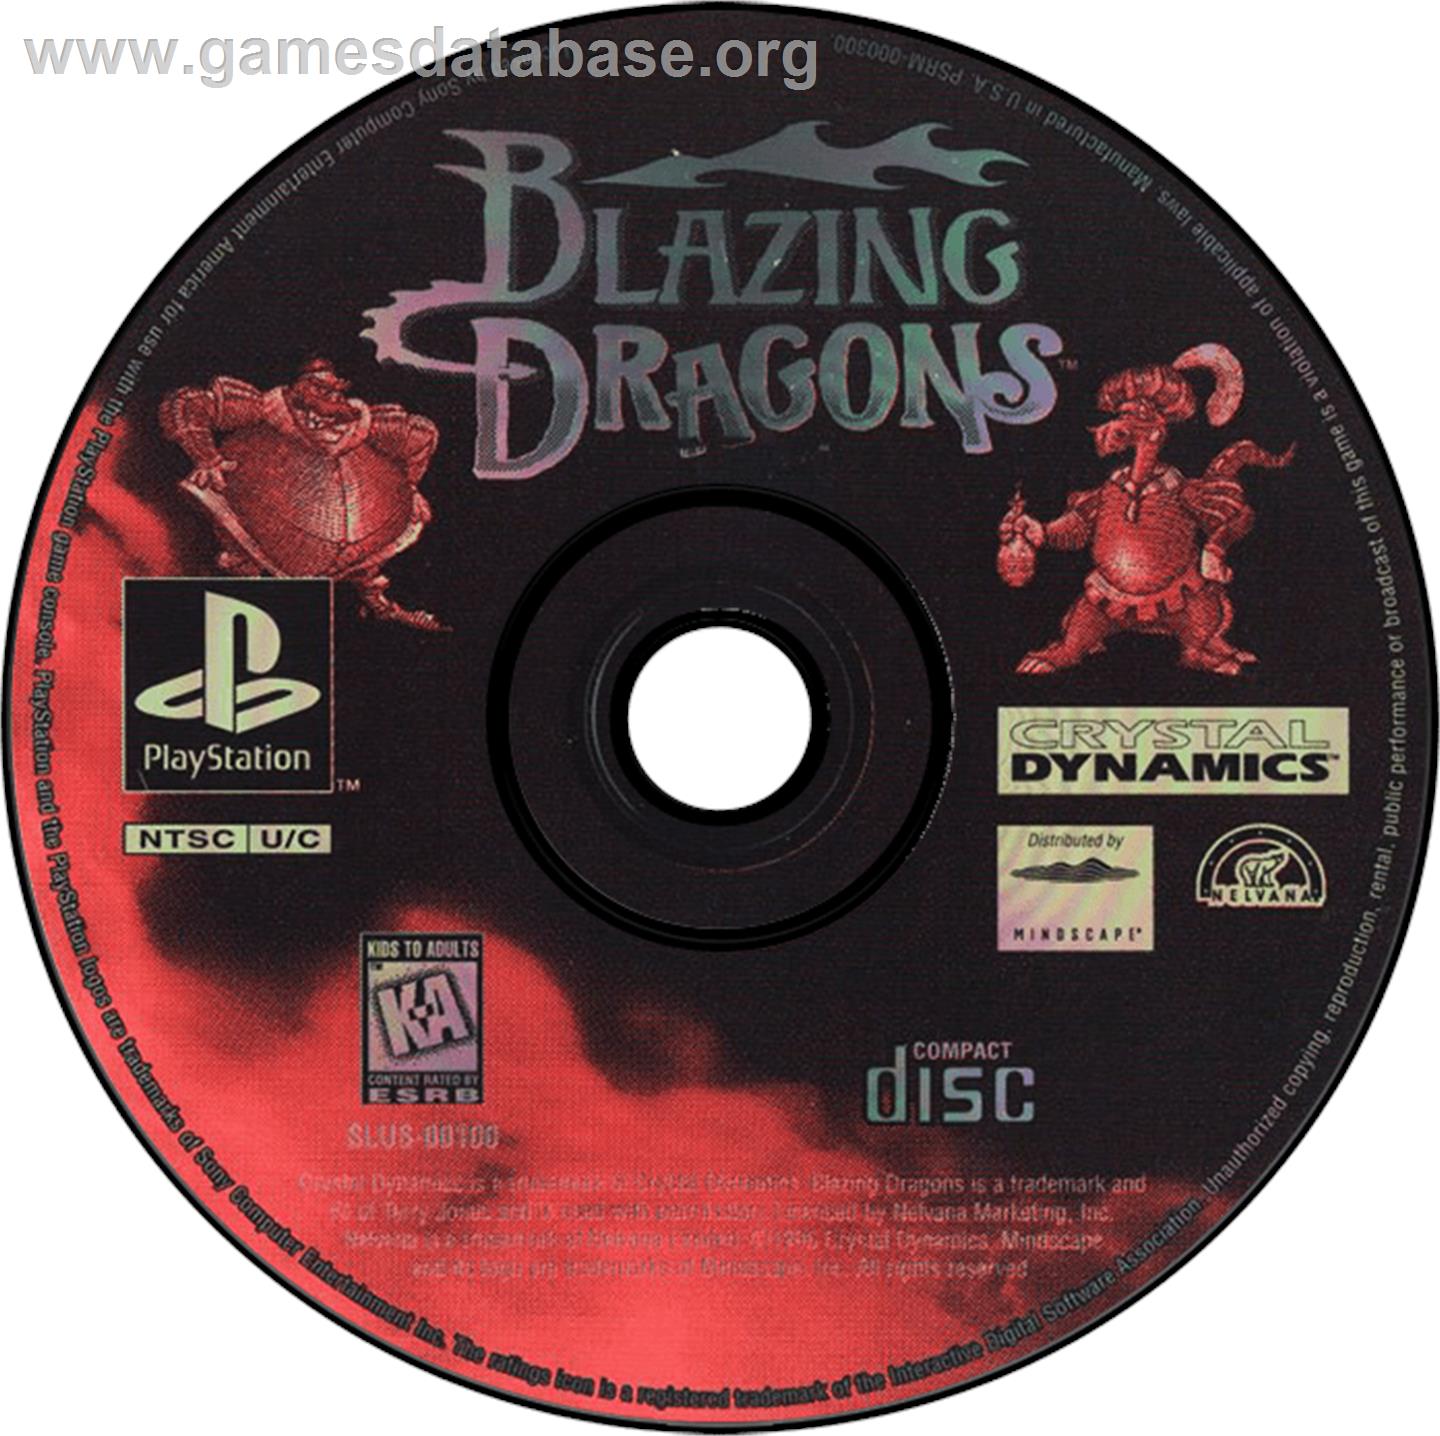 Blazing Dragons - Sony Playstation - Artwork - Disc